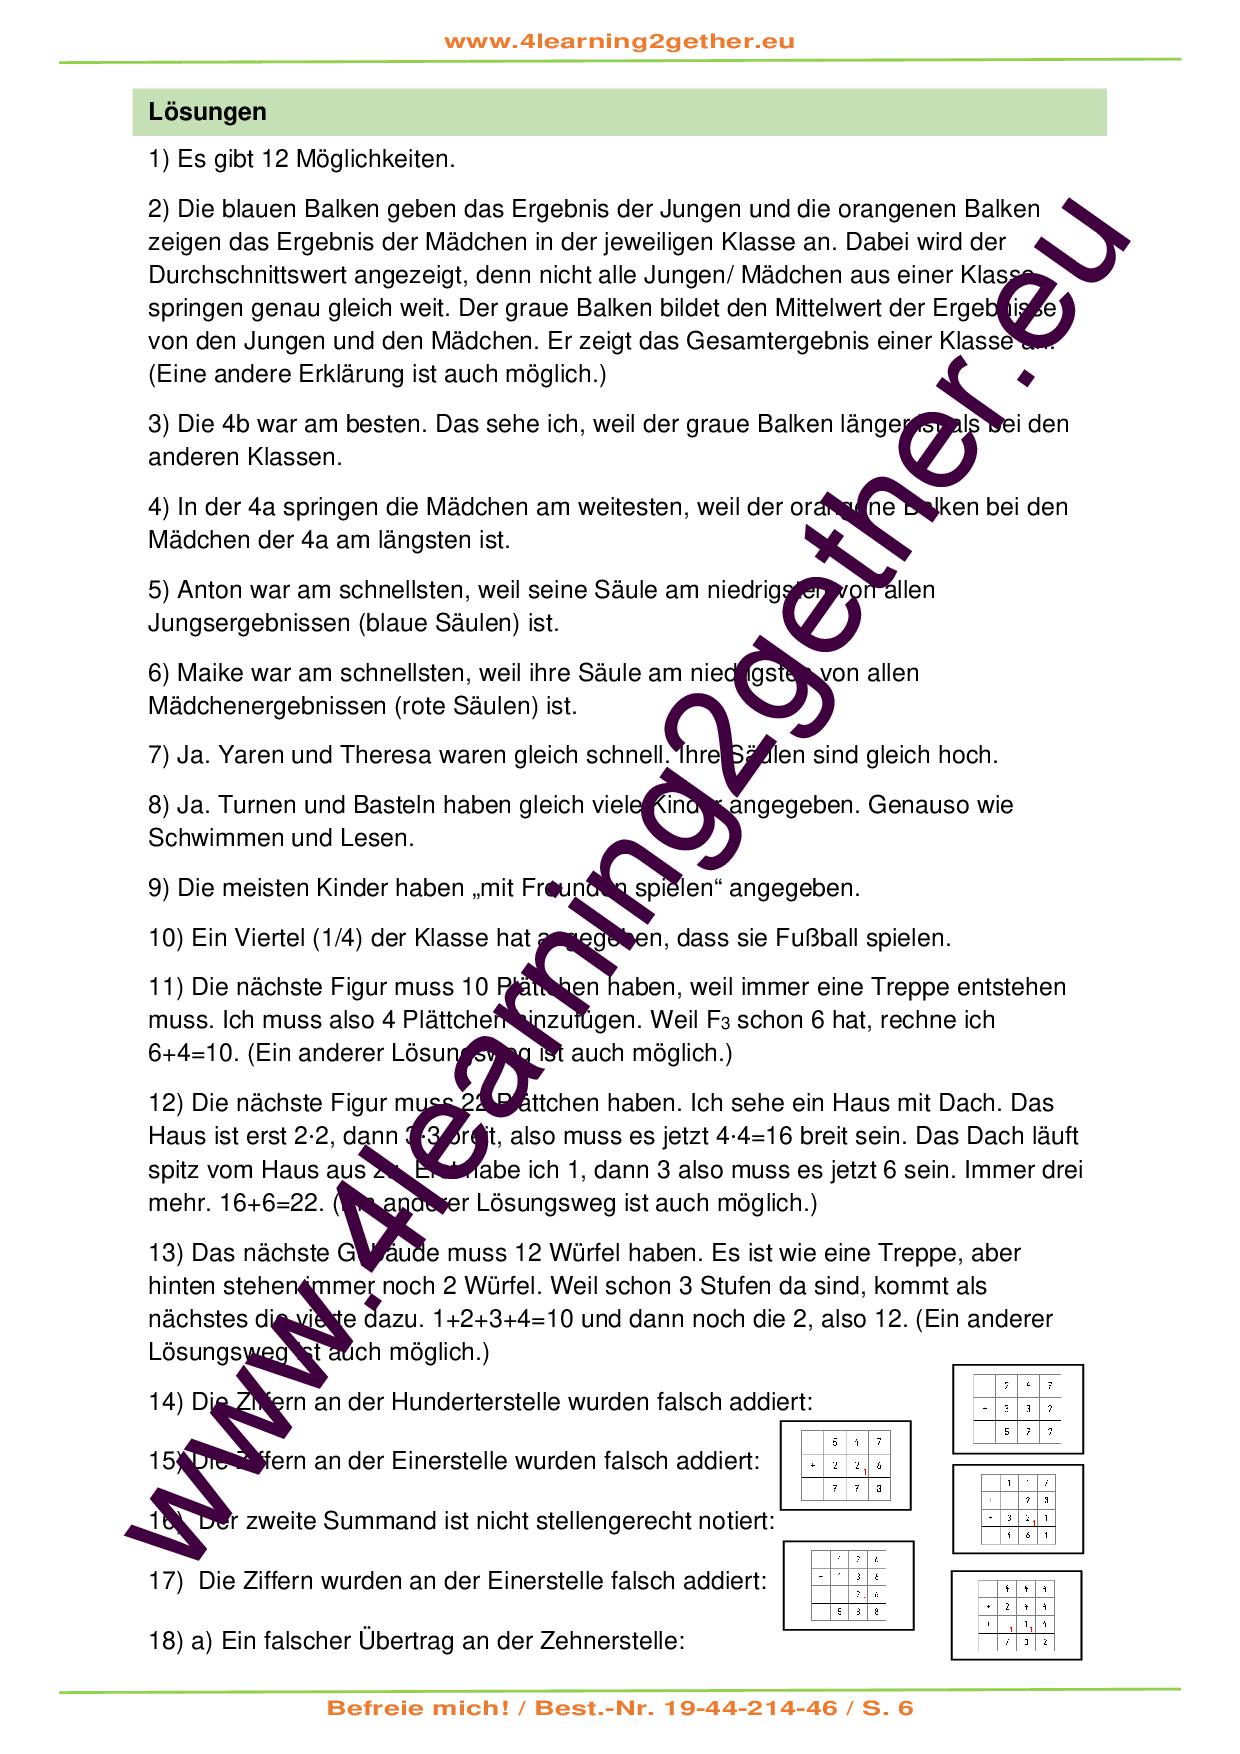 Befreie mich! – Mathematisches Rätselspiel Teil 1 / PDF, ab 10 J., 165 Rätselkarten 